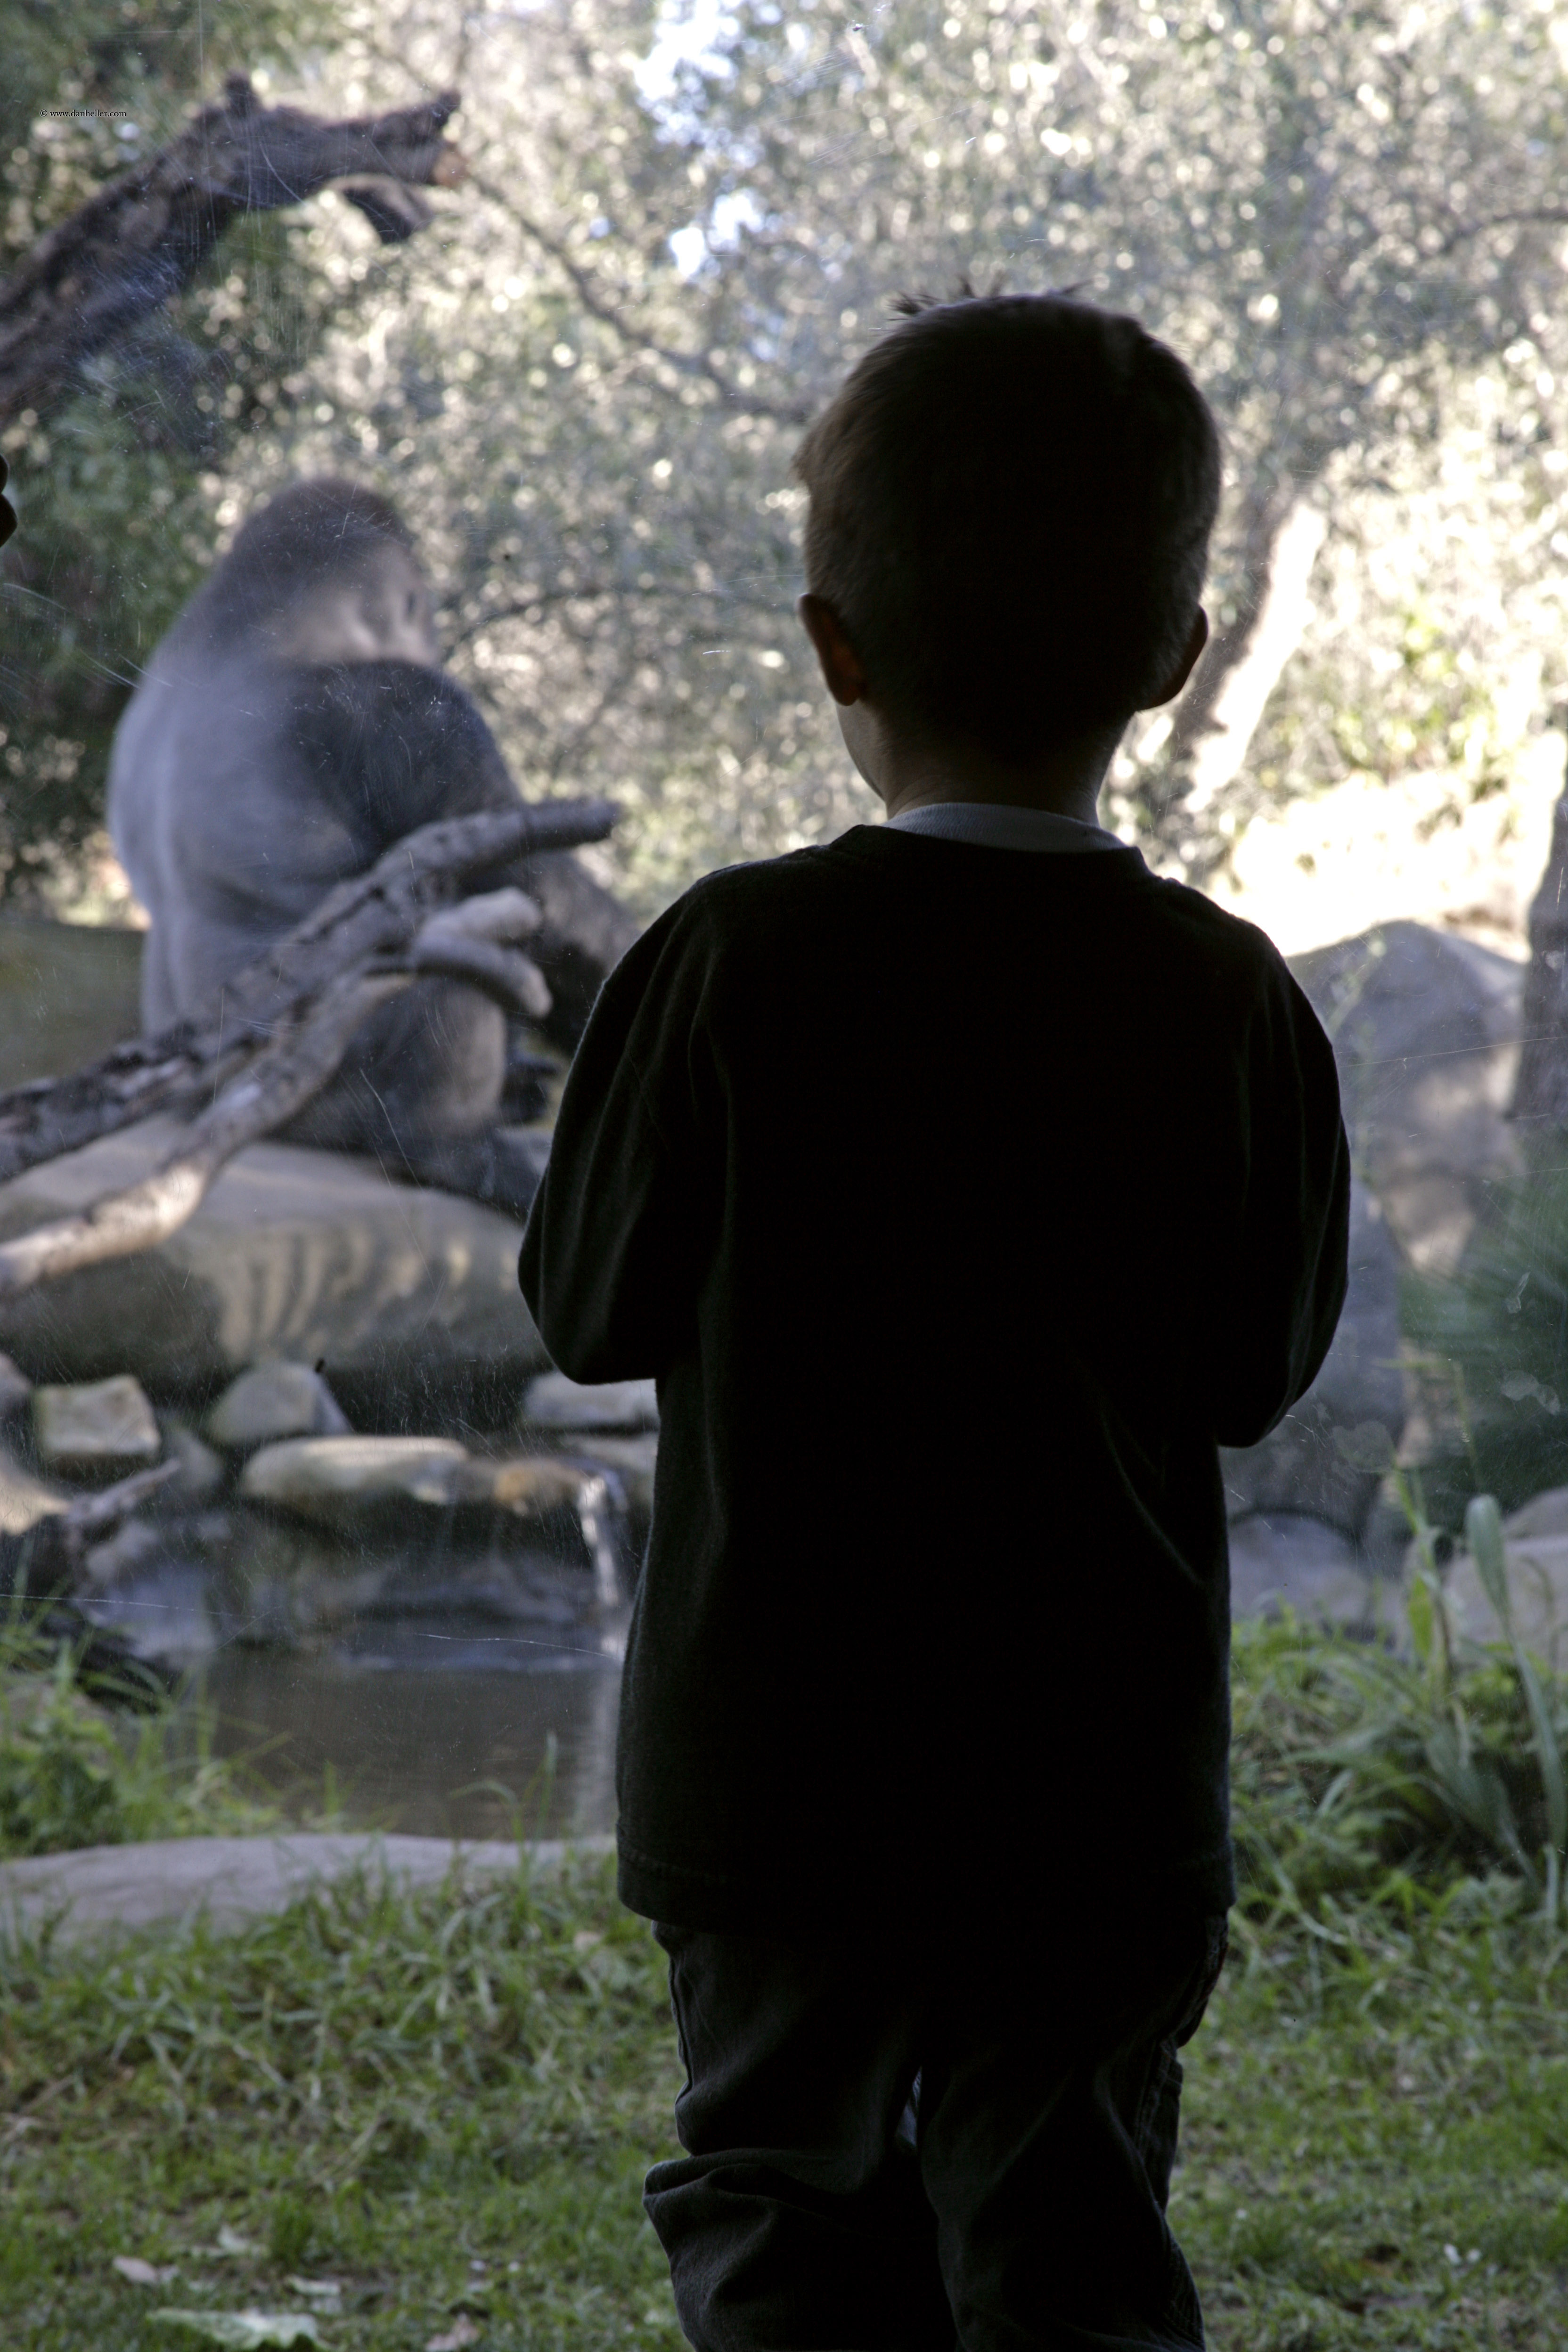 child-watching-gorilla.jpg